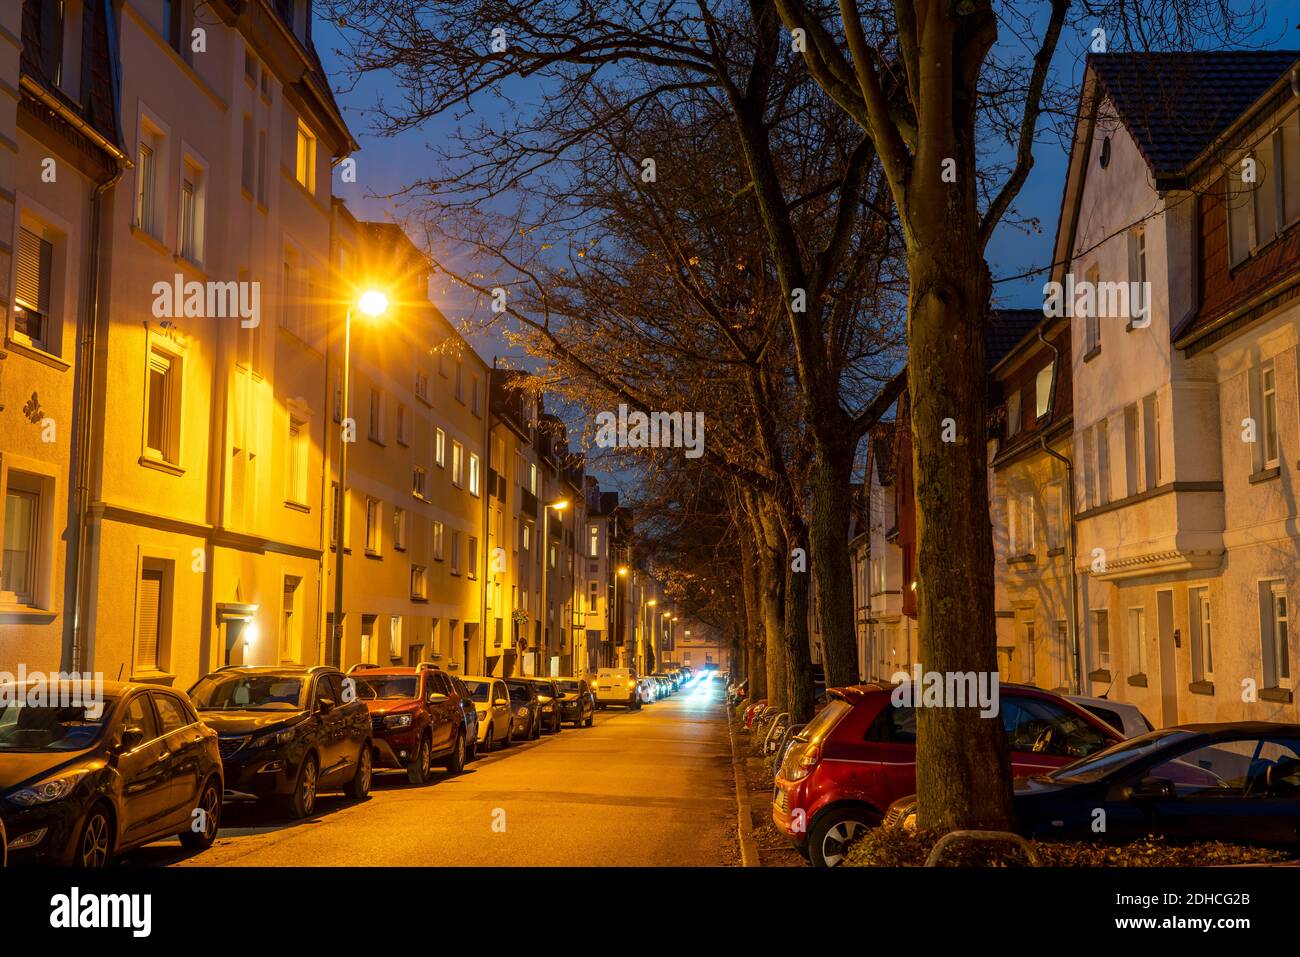 Wohnstrasse, viele Mehrfamilienhäuser in einem Wohnviertel, abends, Laternen Beleuchtung, Essen, NRW, Deutschland Stock Photo